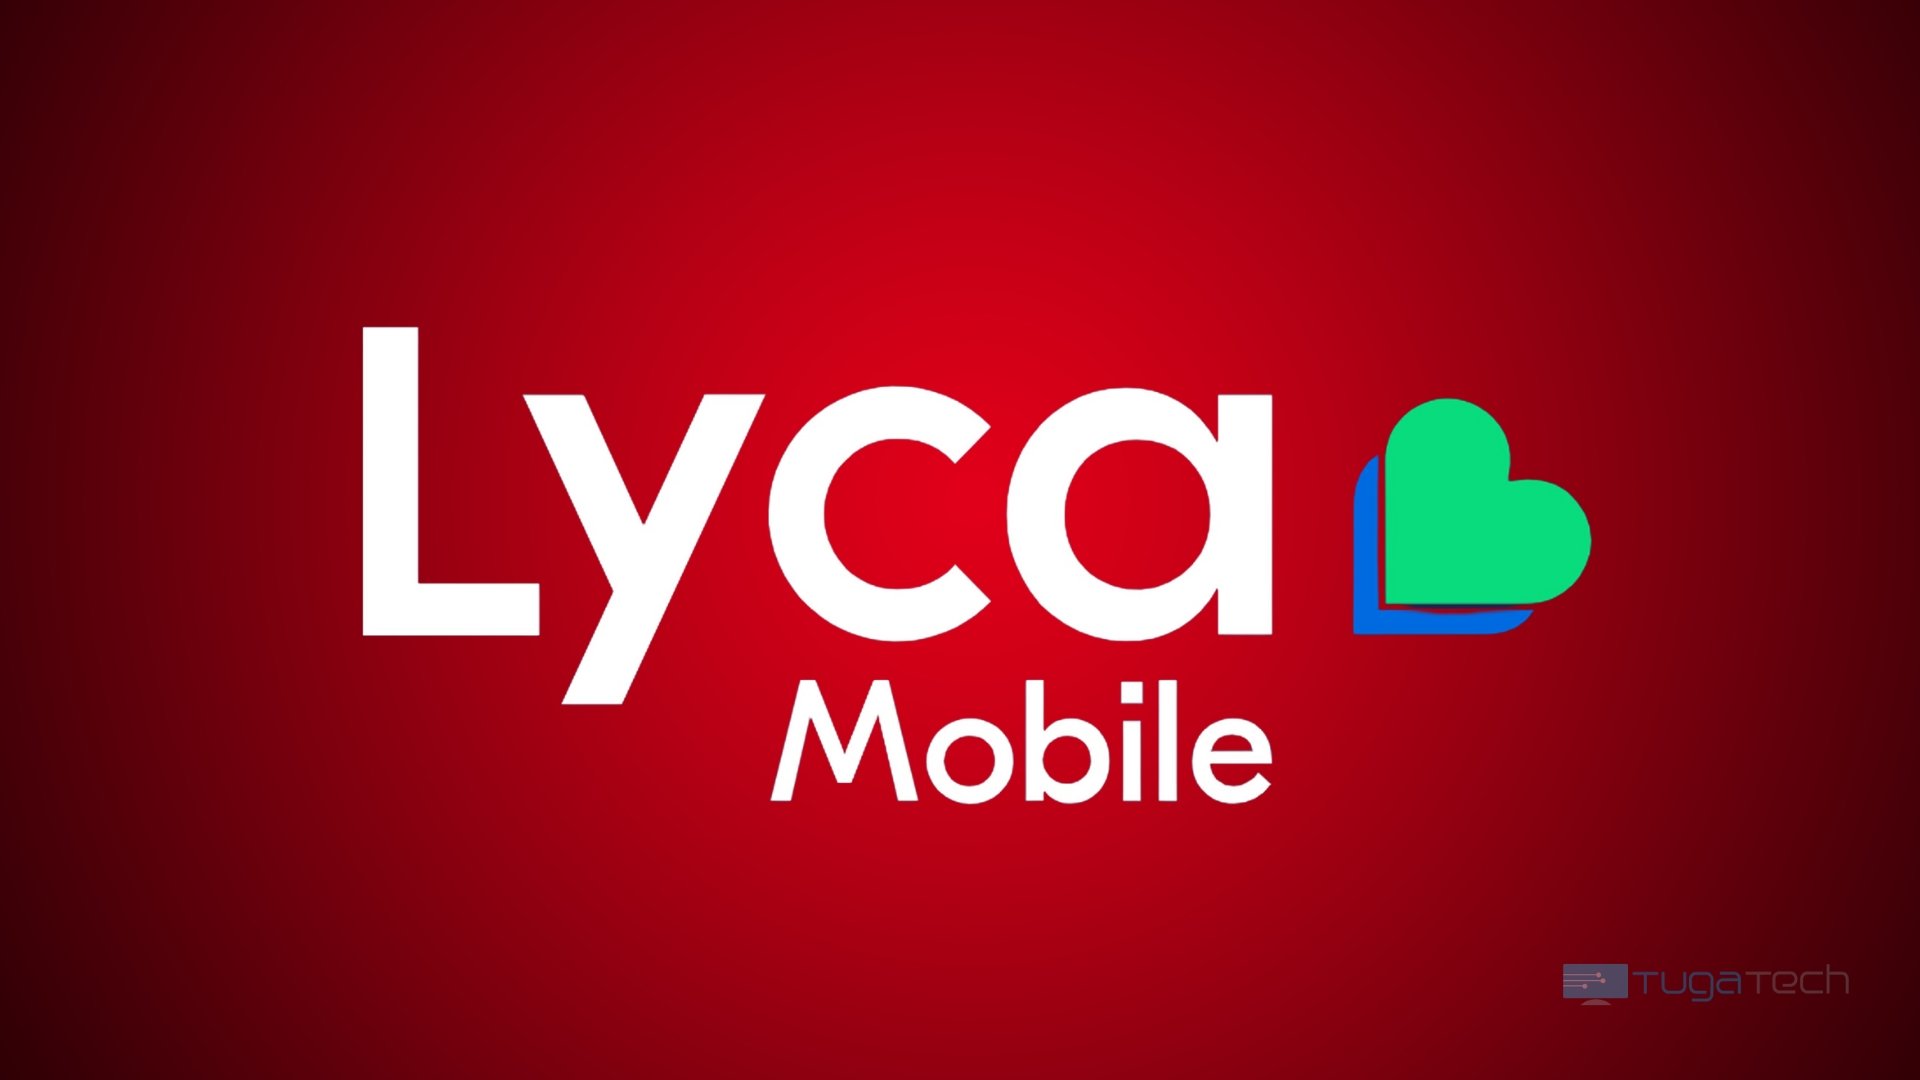 Lyca Mobile alvo de ataque e possível roubo de dados dos clientes